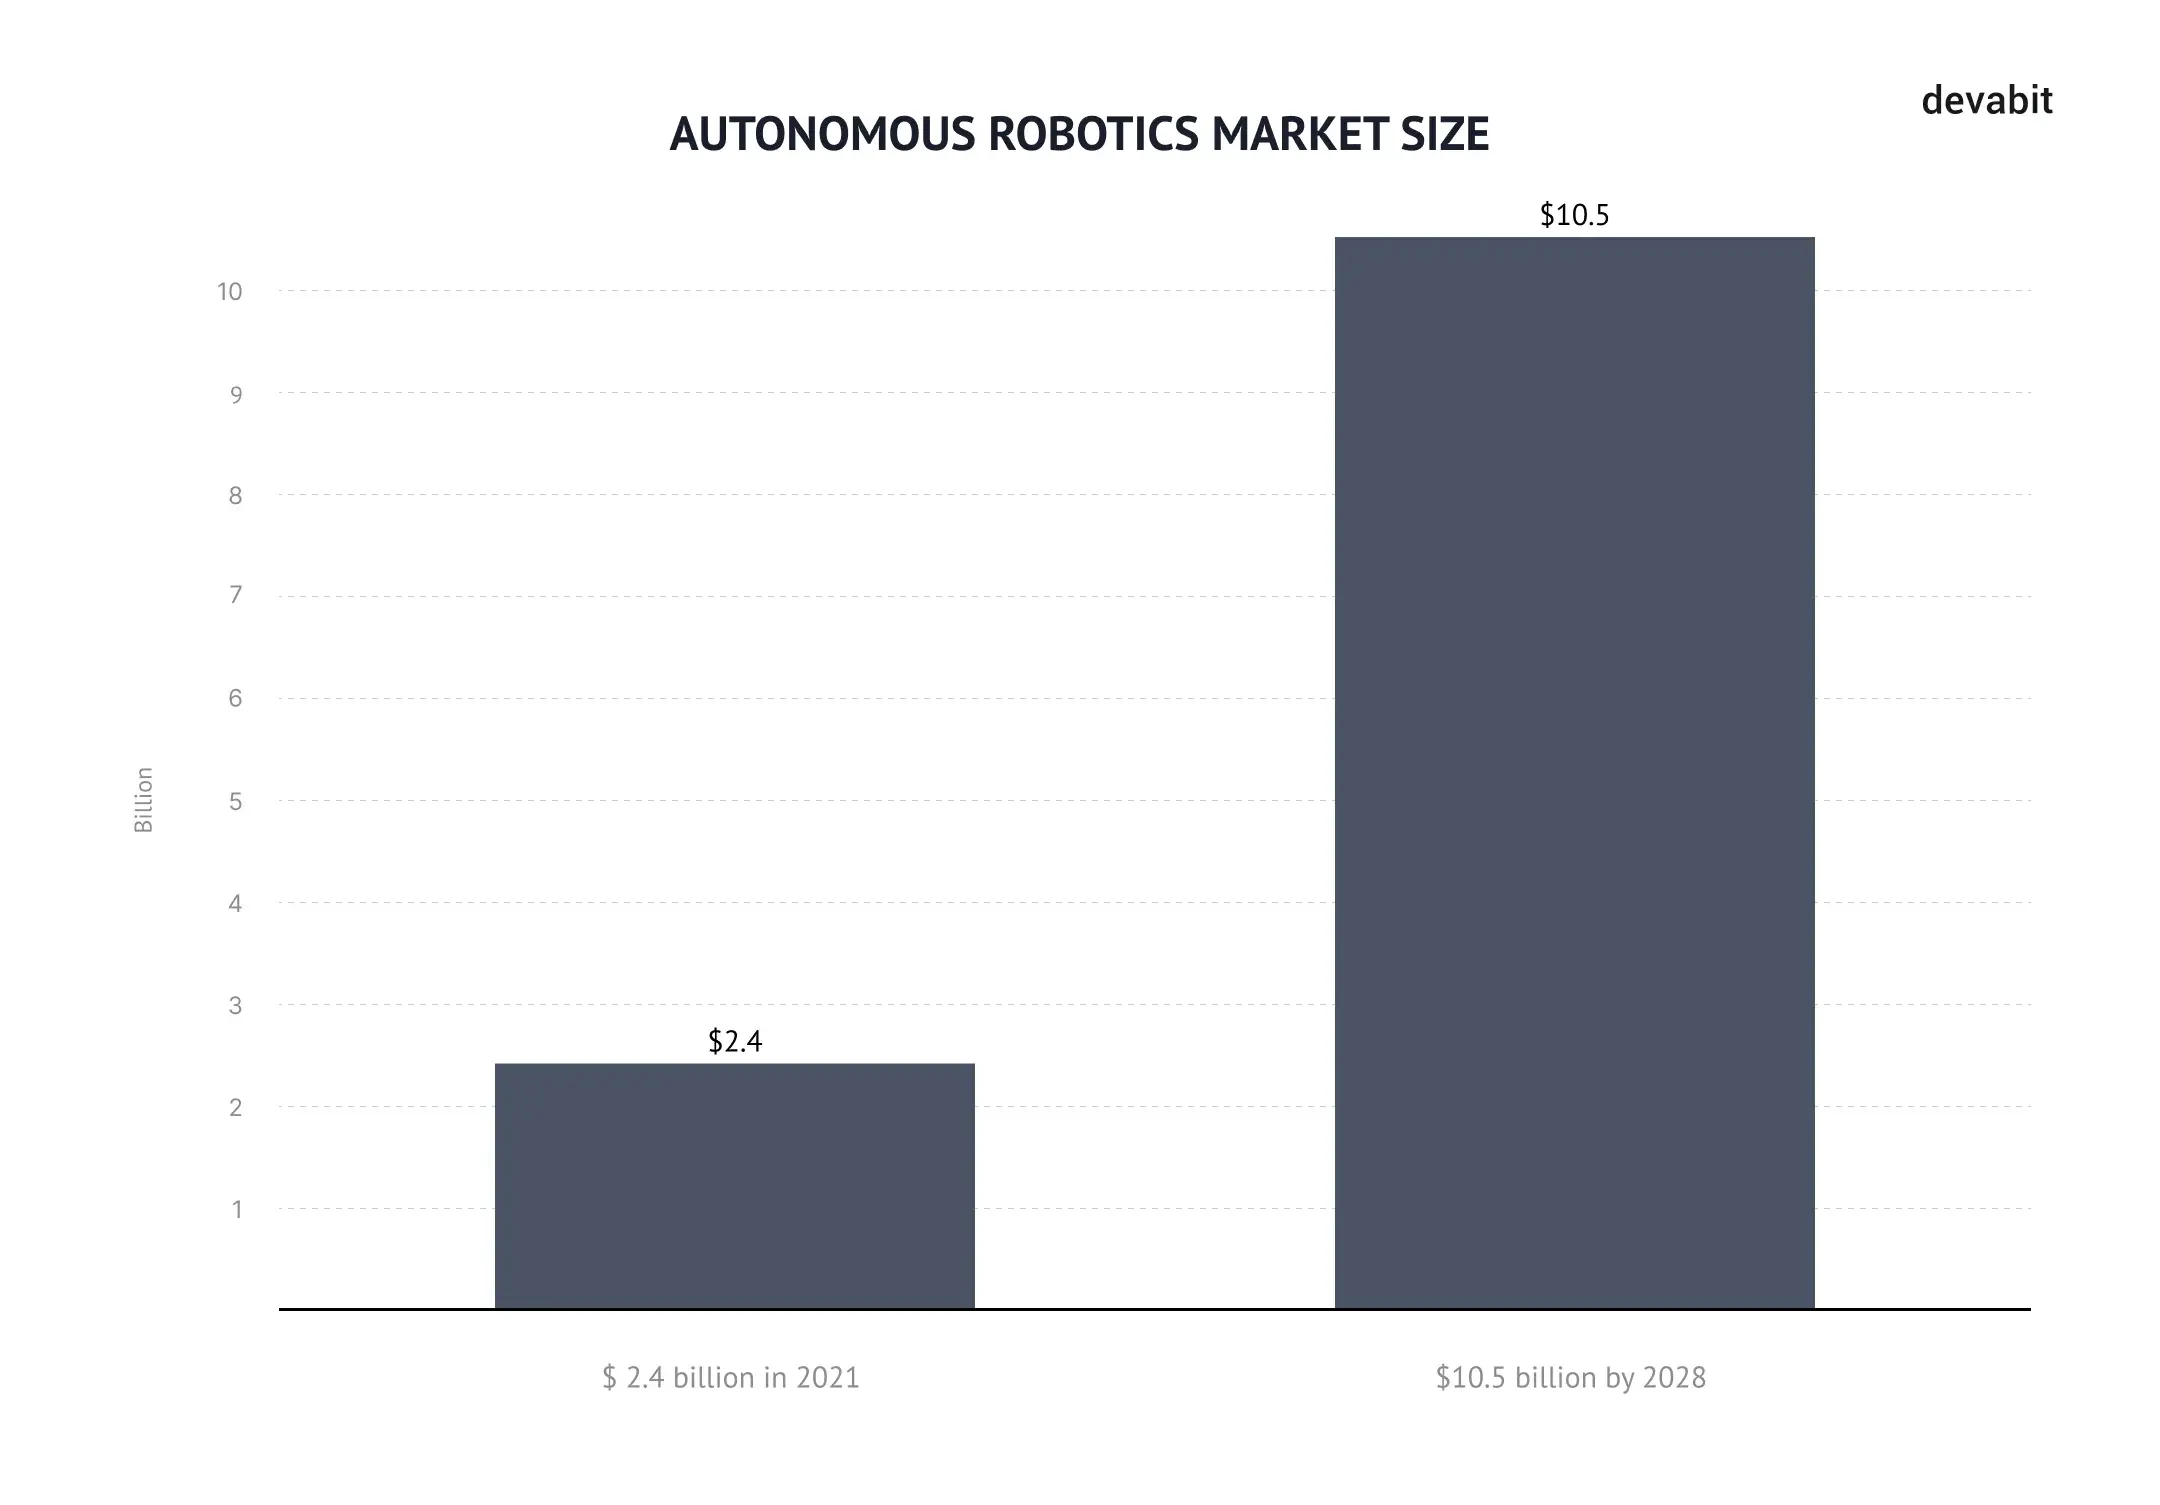 Top 10 emerging technologies 2022: Autonomous robotics market size by devabit